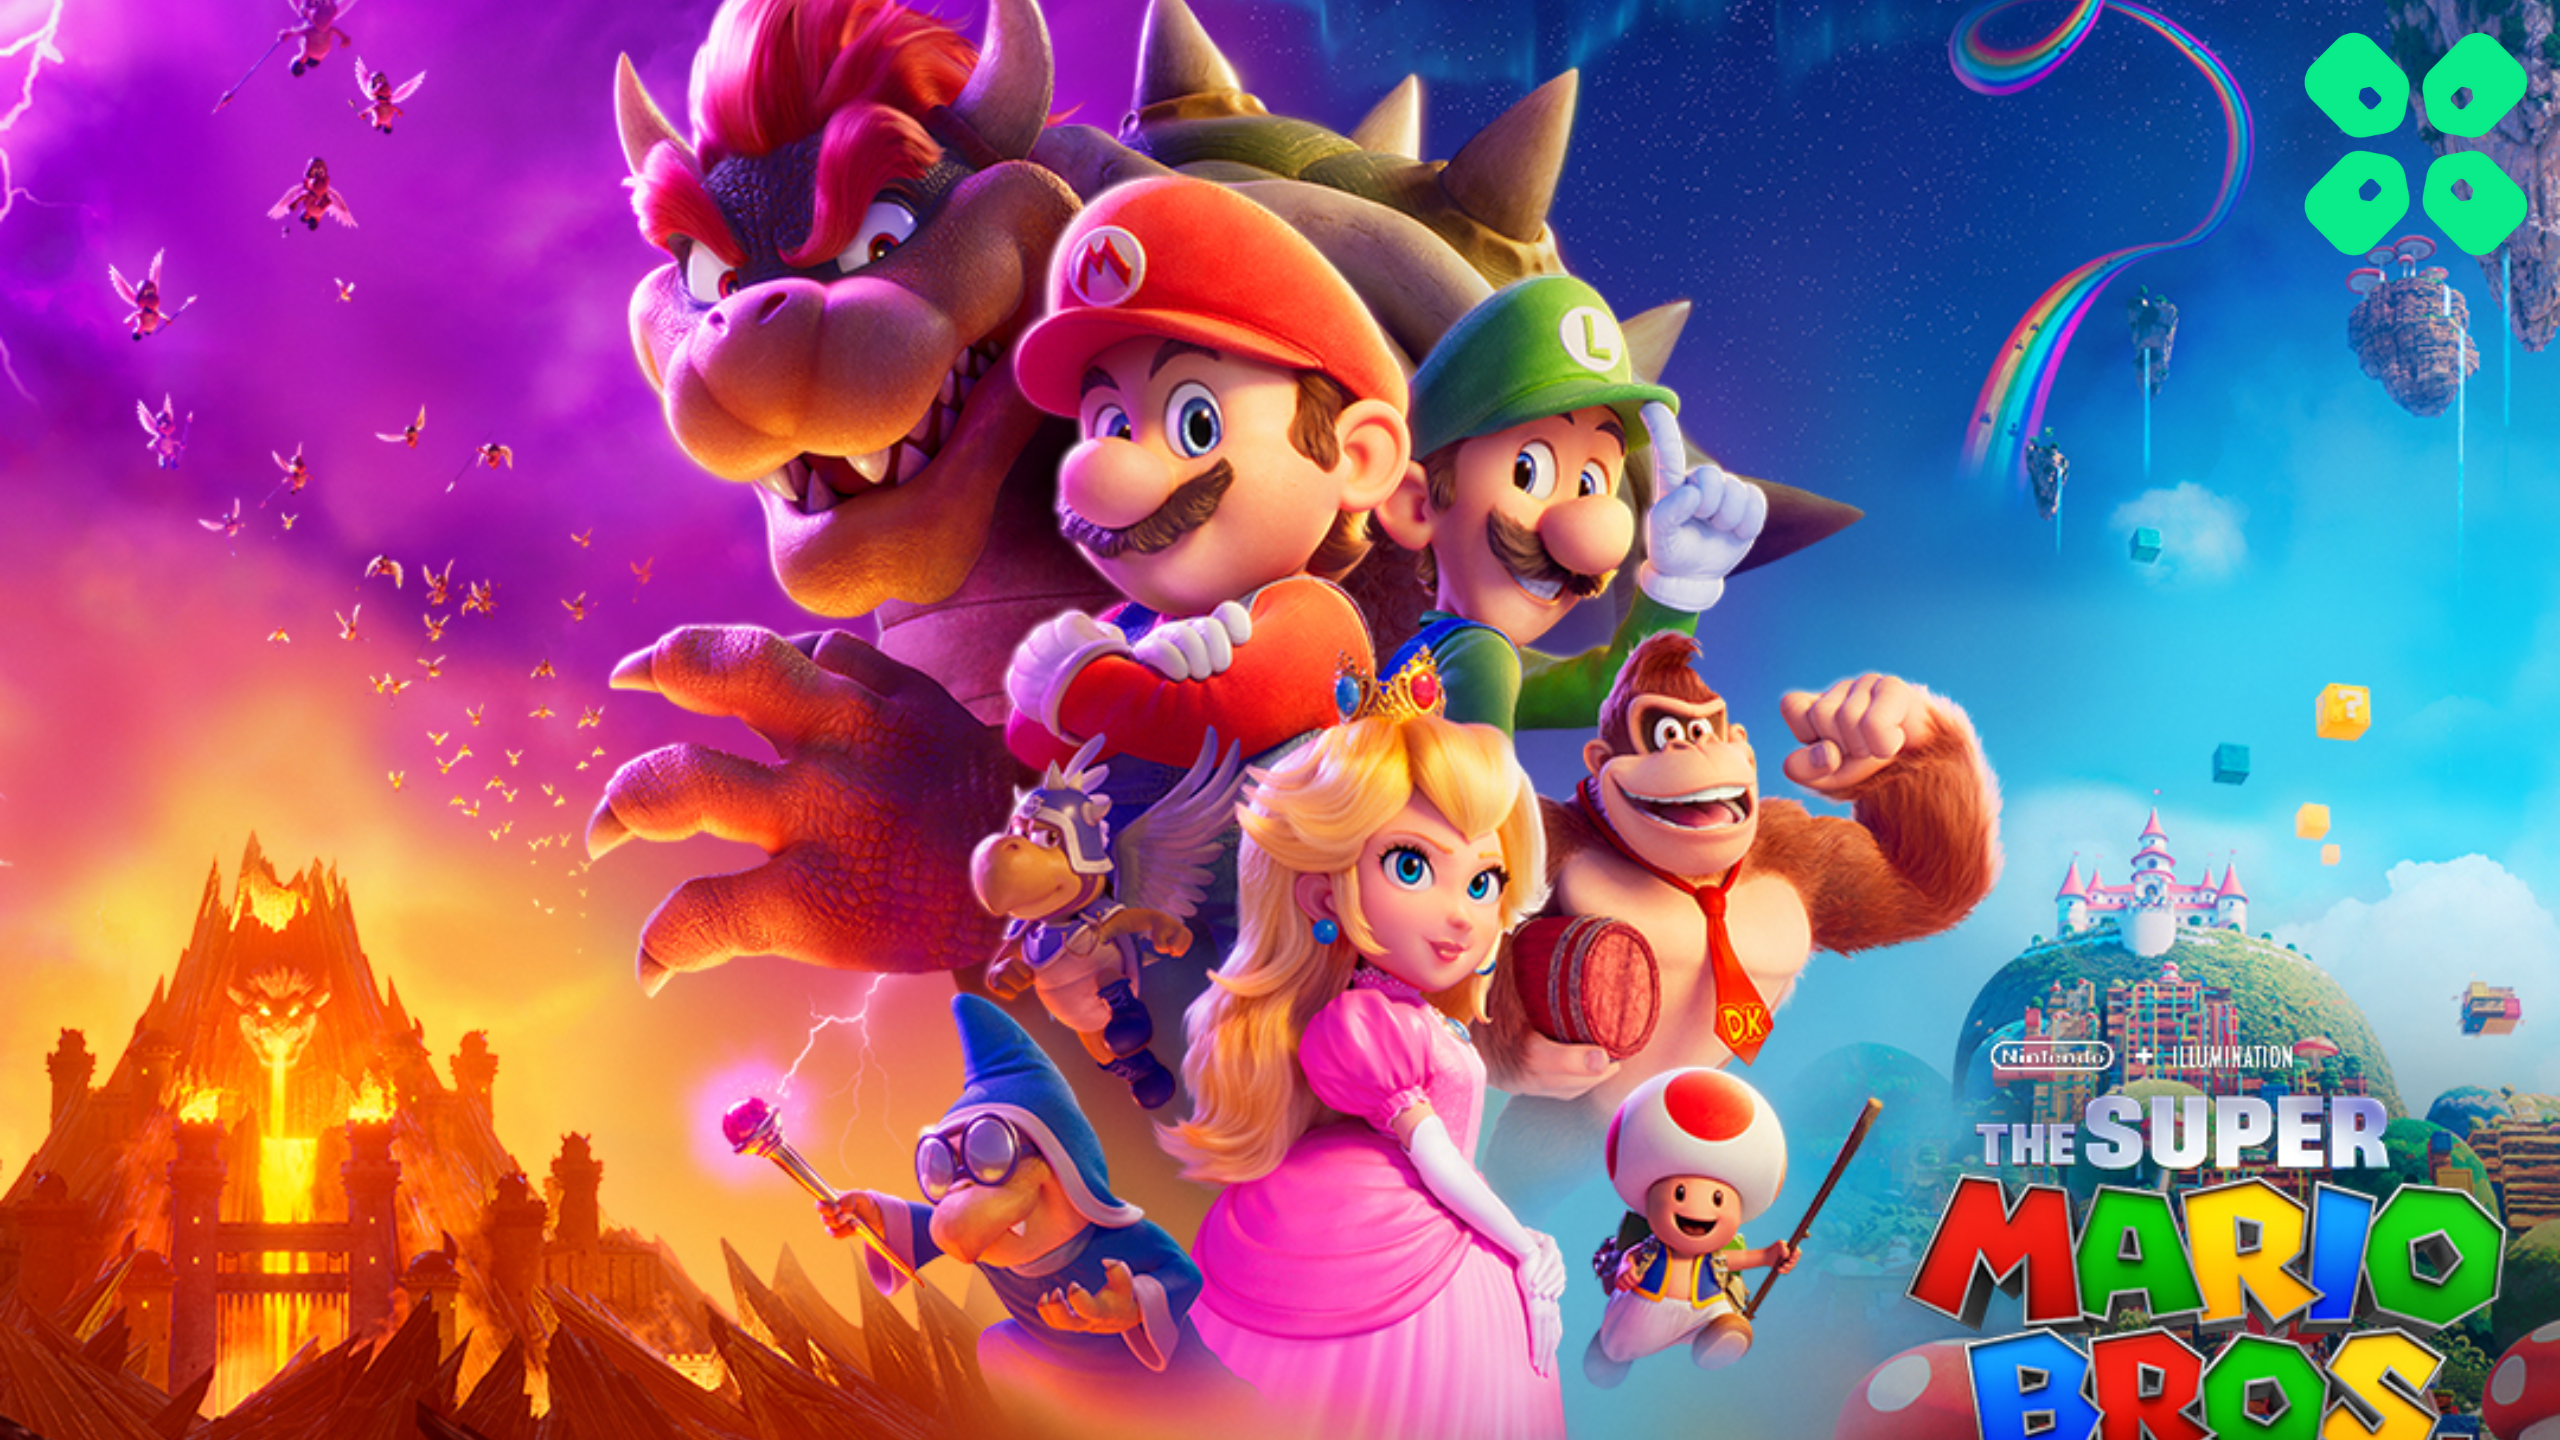 Super Mario Bros Final Trailer Revealed